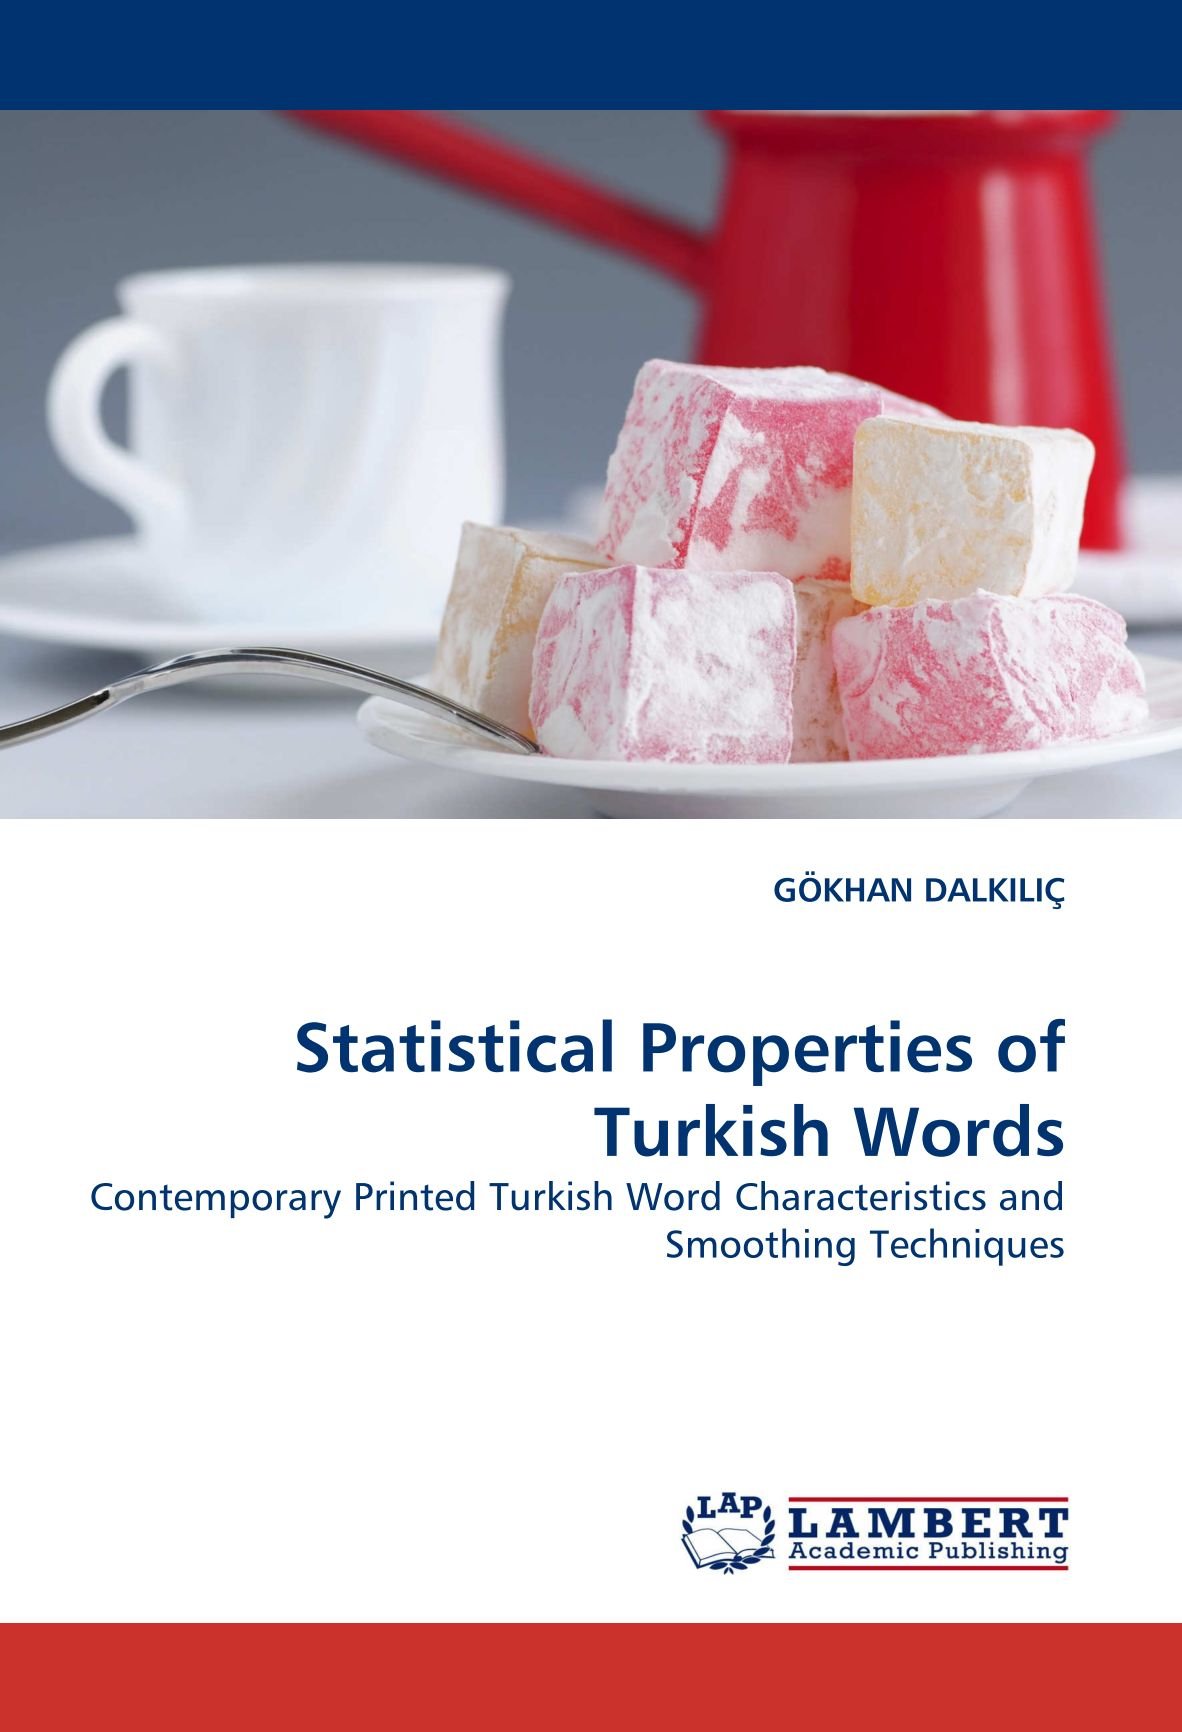 Statistical-Properties-of-Turkish-Words.jpg